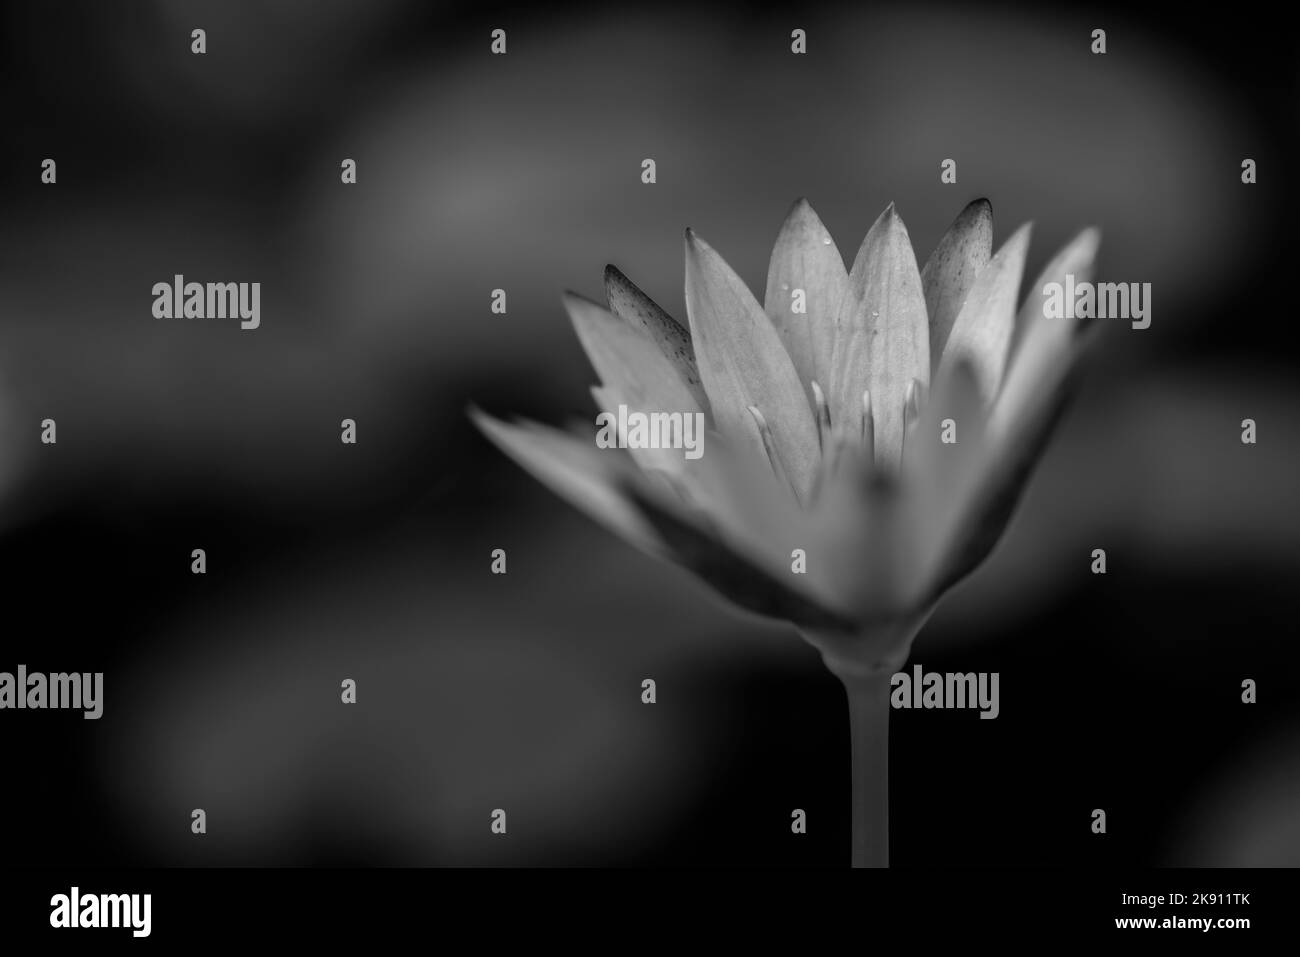 Un primo piano in scala di grigi di Nymphaea nouchali, loto stellato, ninfea acquario, o fiore di manel. Foto Stock